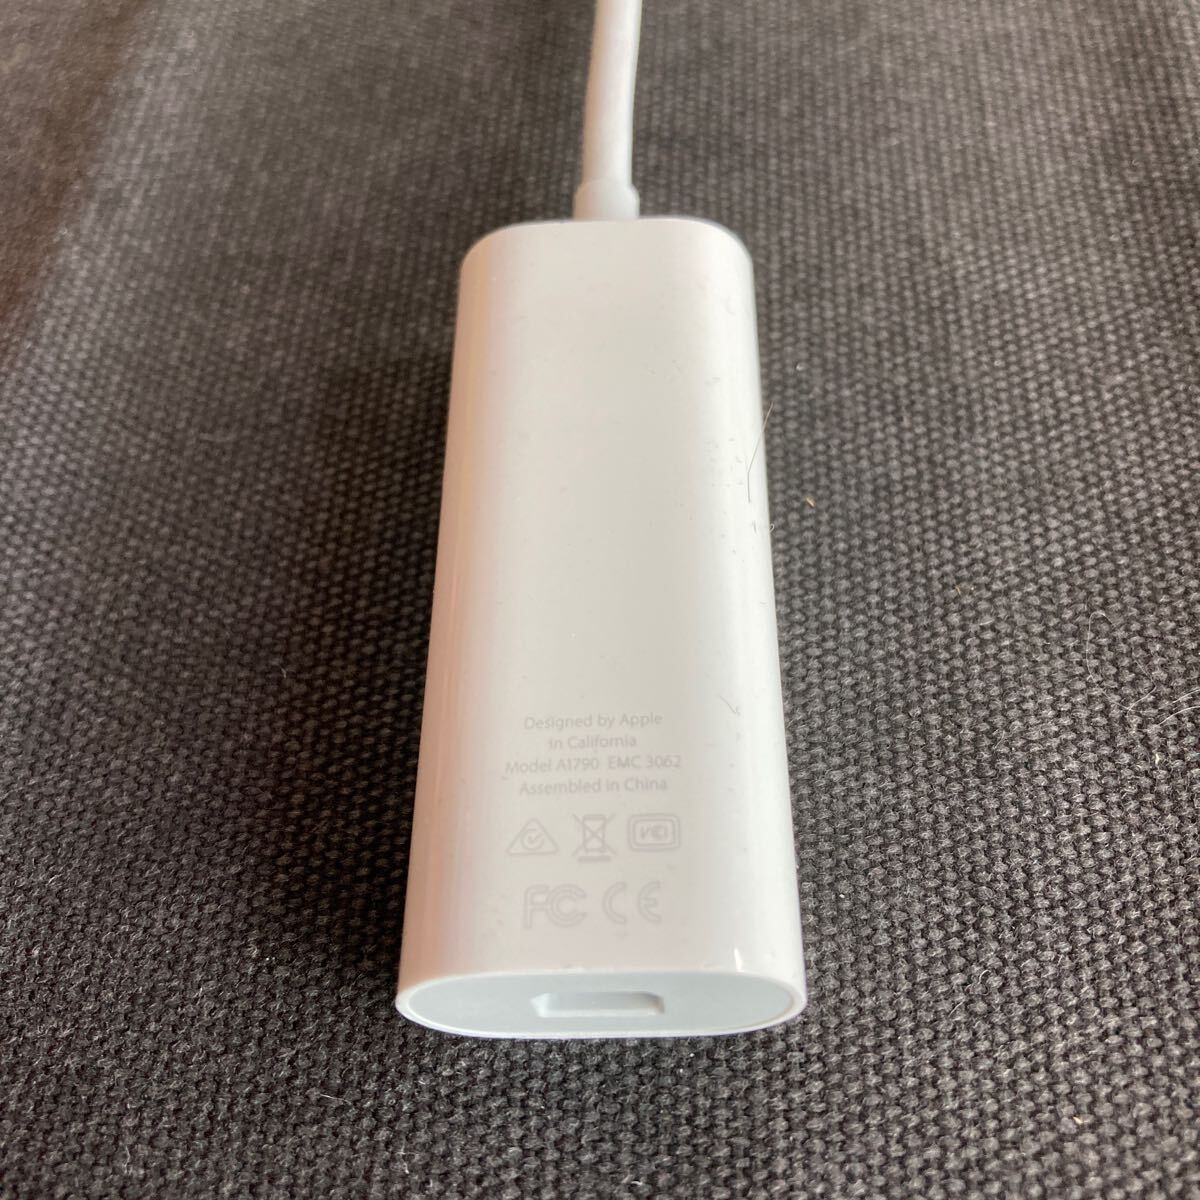 【動作未確認】Apple アップル Thunderbolt 3 USB-C Thunderbolt 2アダプタ A1790【送料無料】の画像3